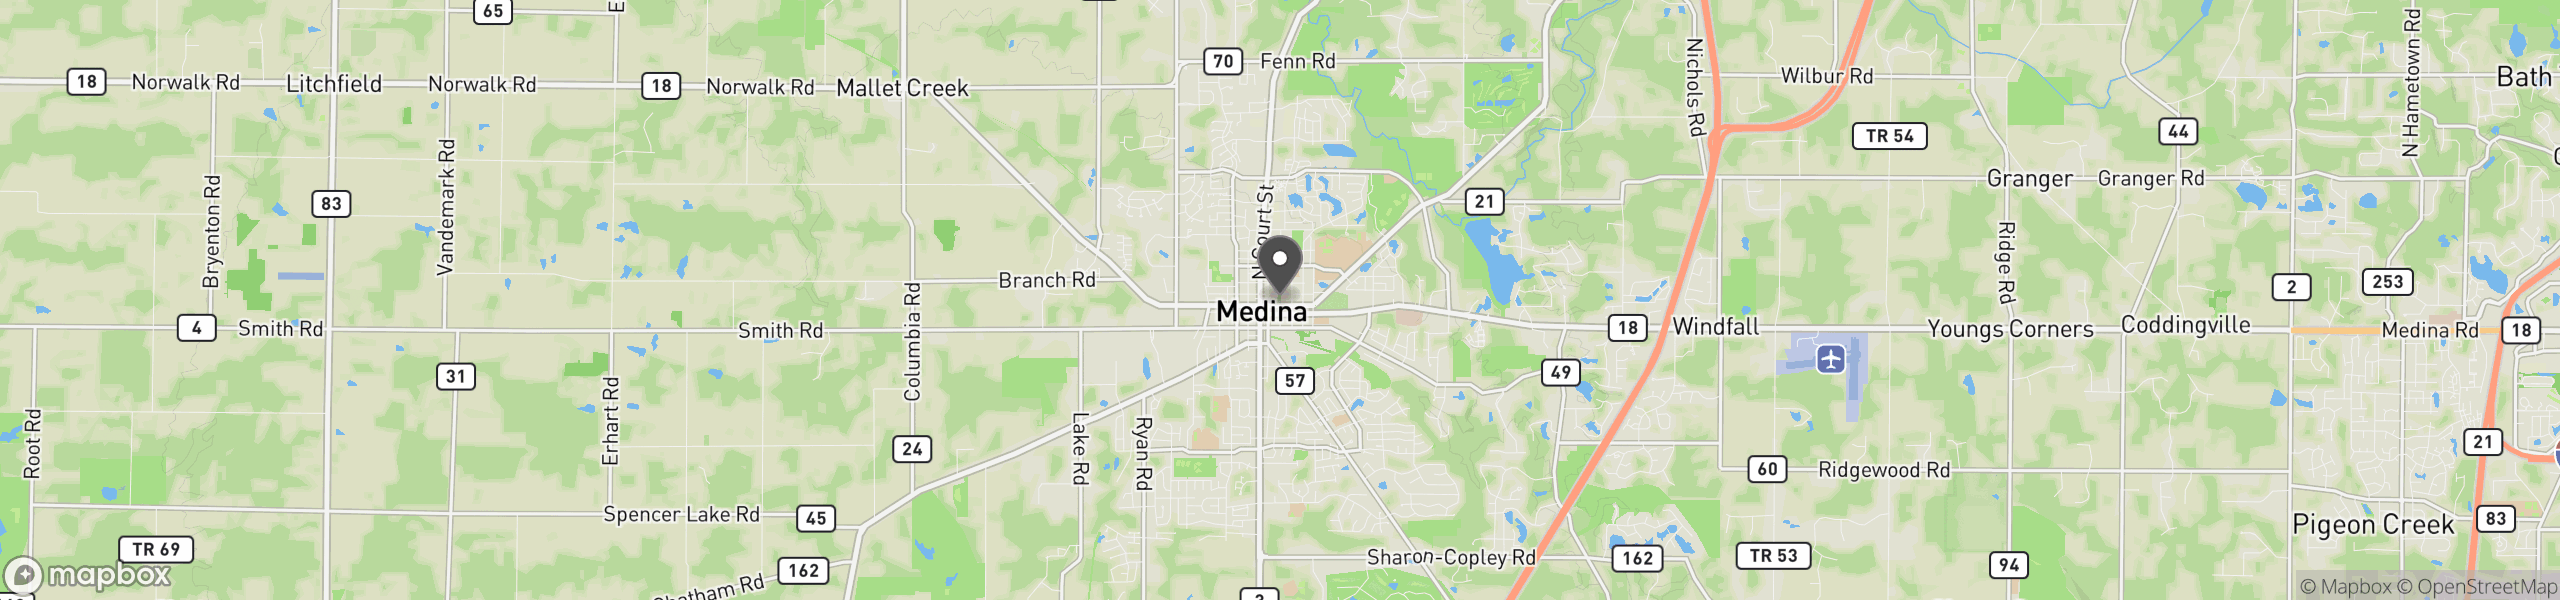 Medina, OH